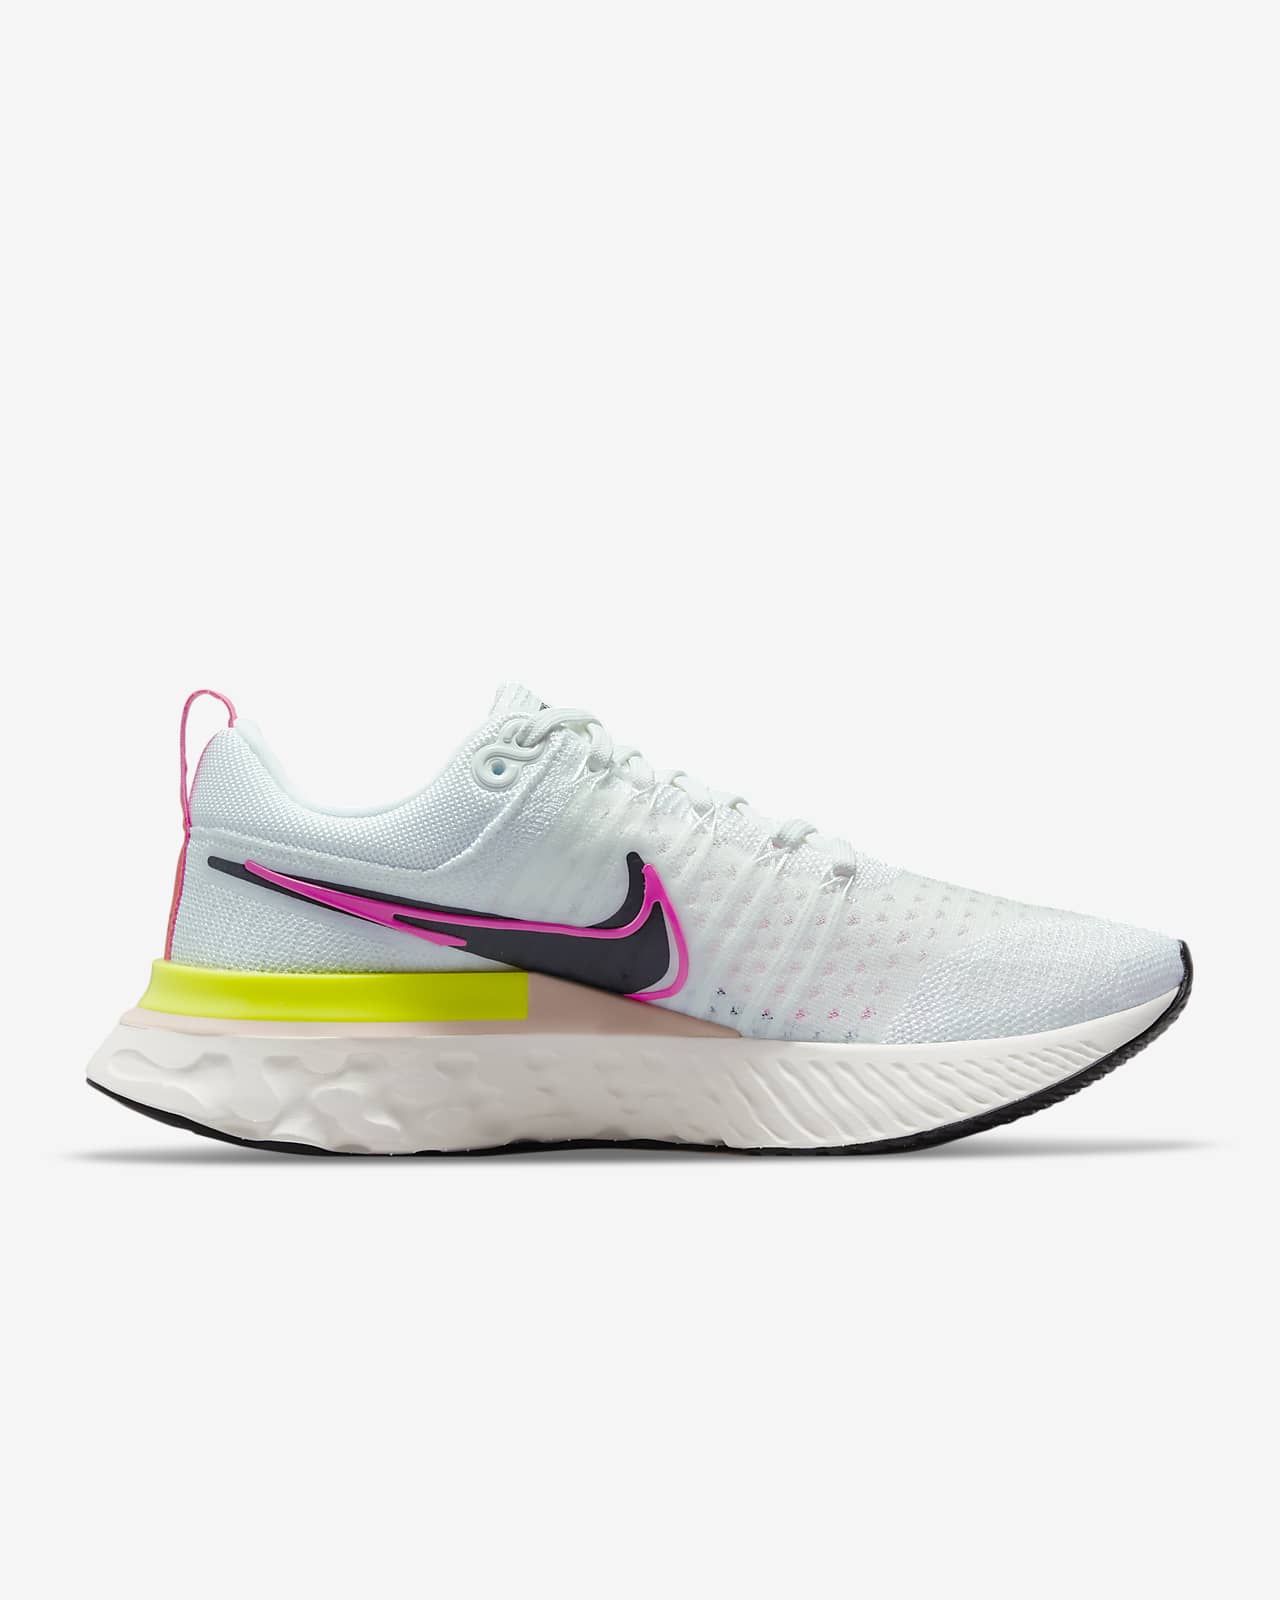 Nike React Infinity Run Flyknit 2 Women's Running Shoe